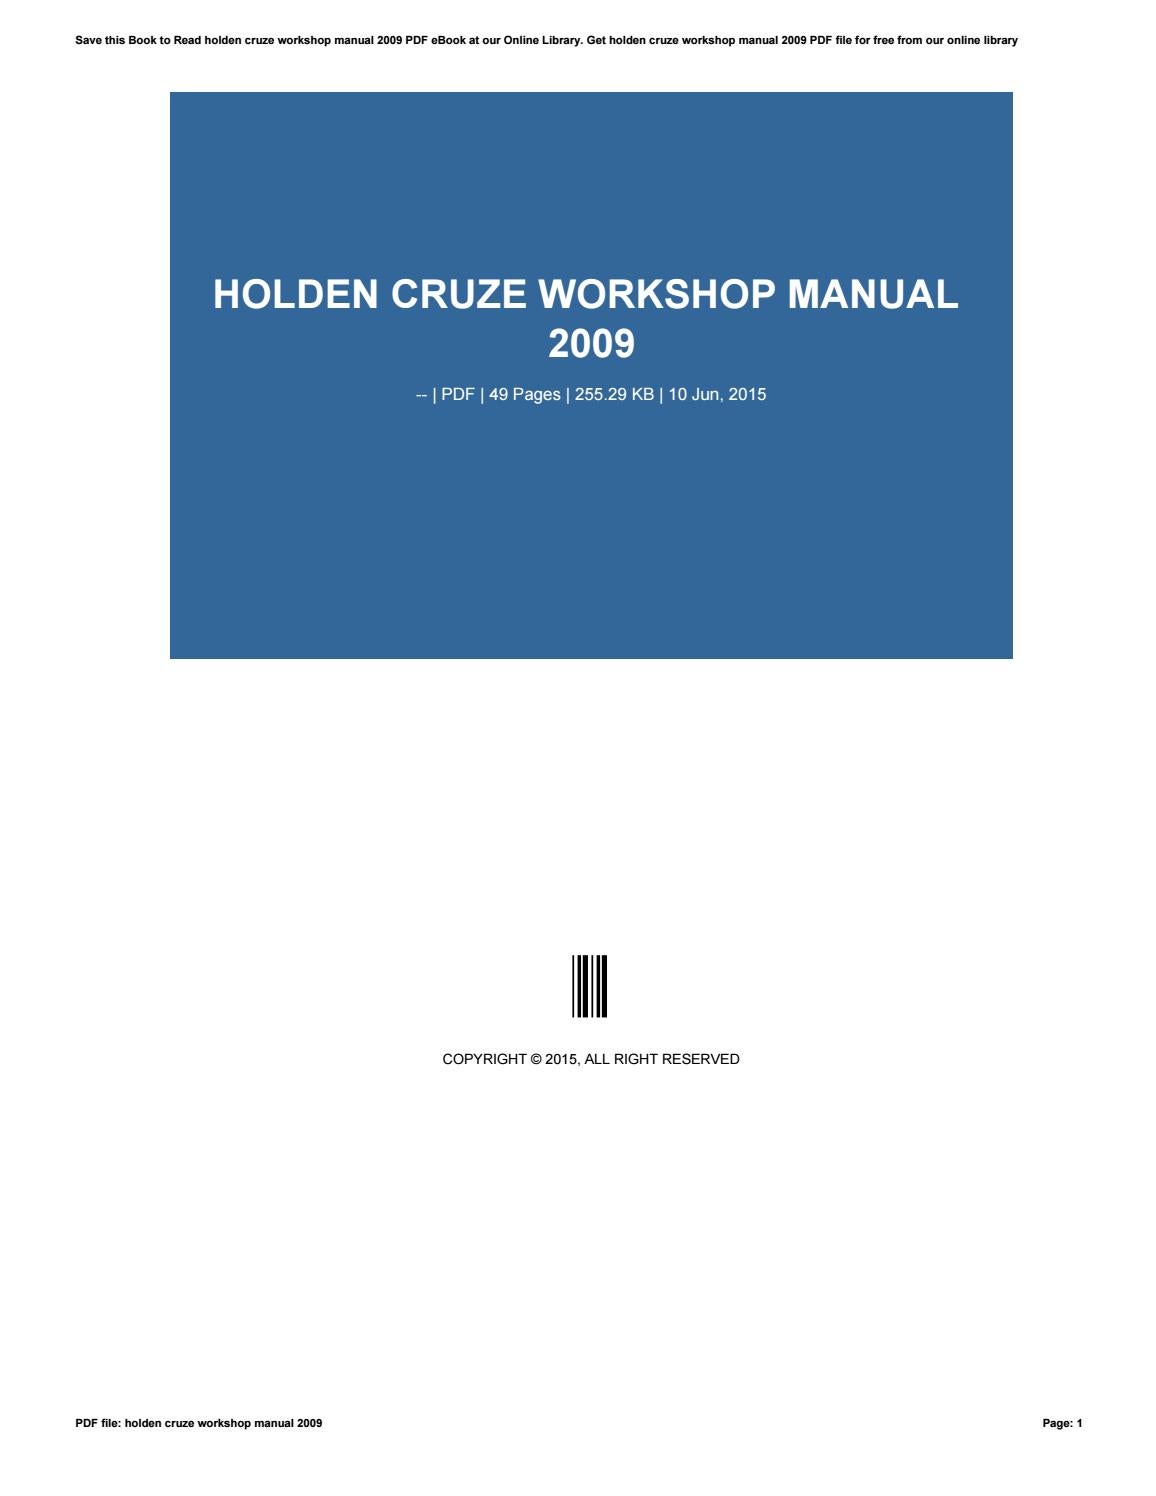 2012 holden cruze workshop manual pdf